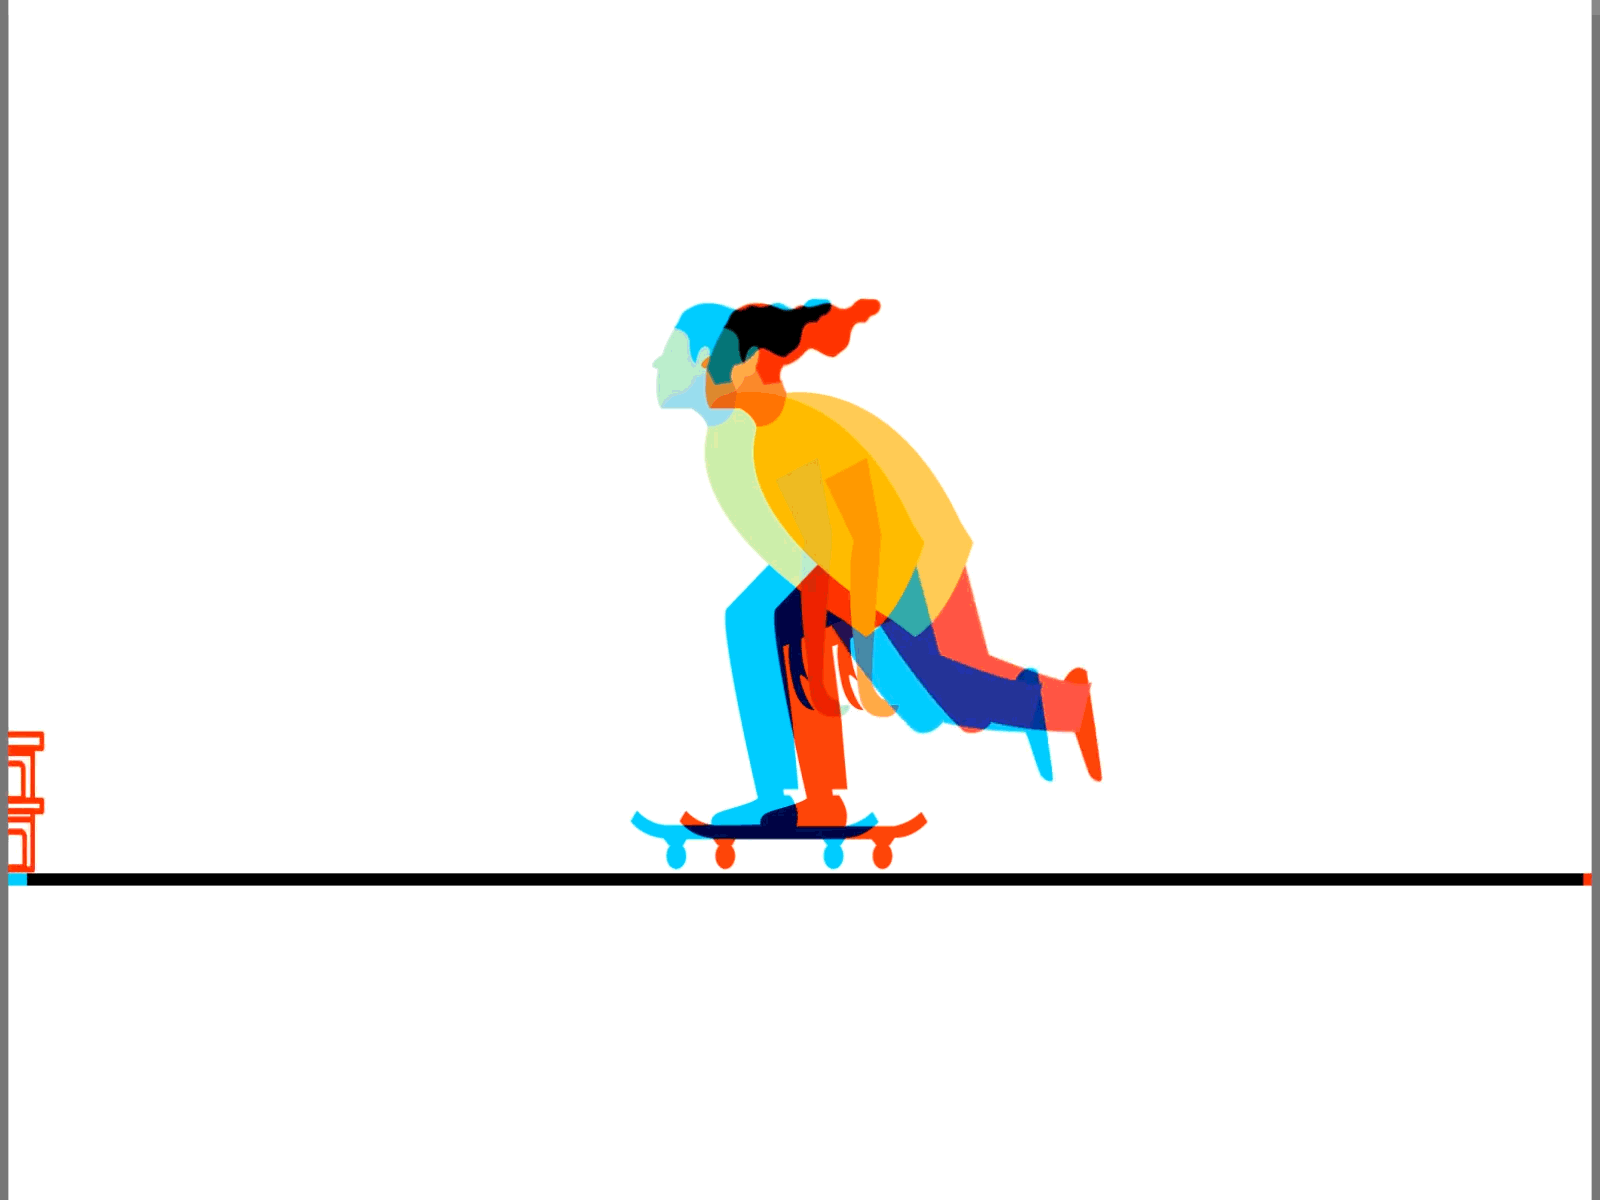 skate 3d 2d 3d 3d animation 3d artist adobe adobe illustrator after effect aftereffect characer design designer flat graphic design illustration illustrator photoshop skate skateboard skateboarding skating